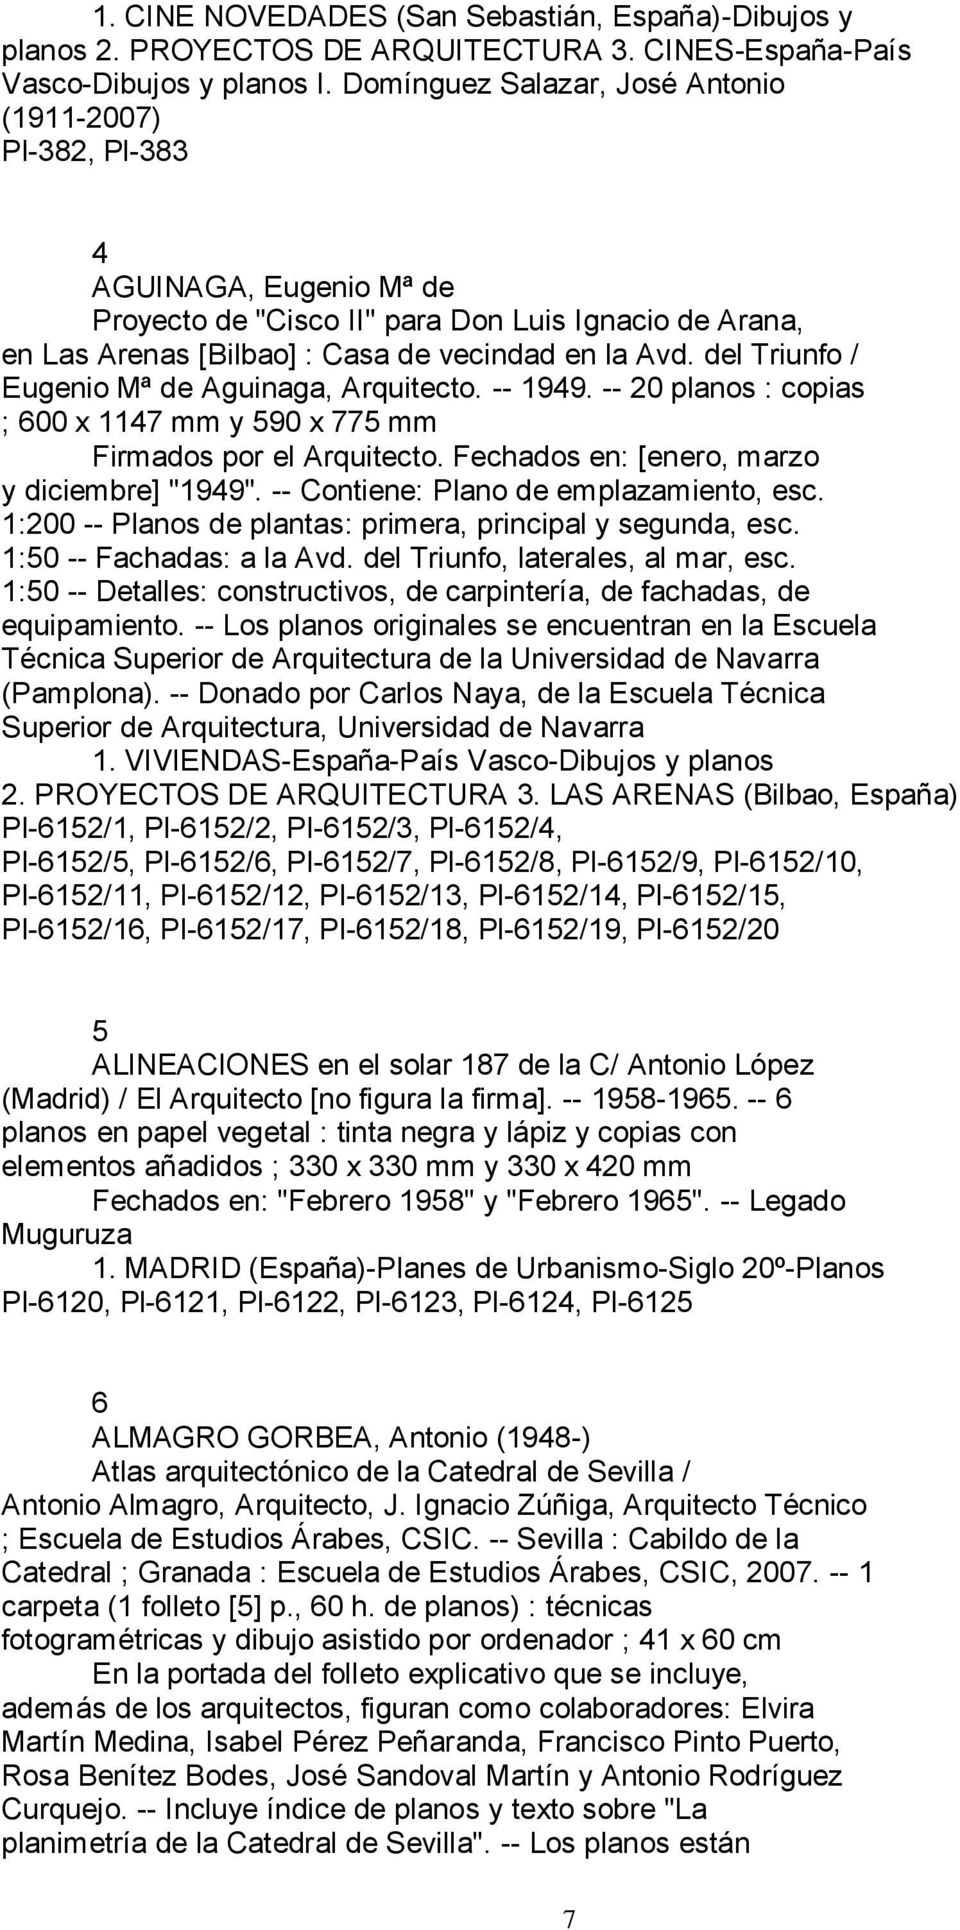 del Triunfo / Eugenio Mª de Aguinaga, Arquitecto. -- 1949. -- 20 planos : copias ; 600 x 1147 mm y 590 x 775 mm Firmados por el Arquitecto. Fechados en: [enero, marzo y diciembre] "1949".